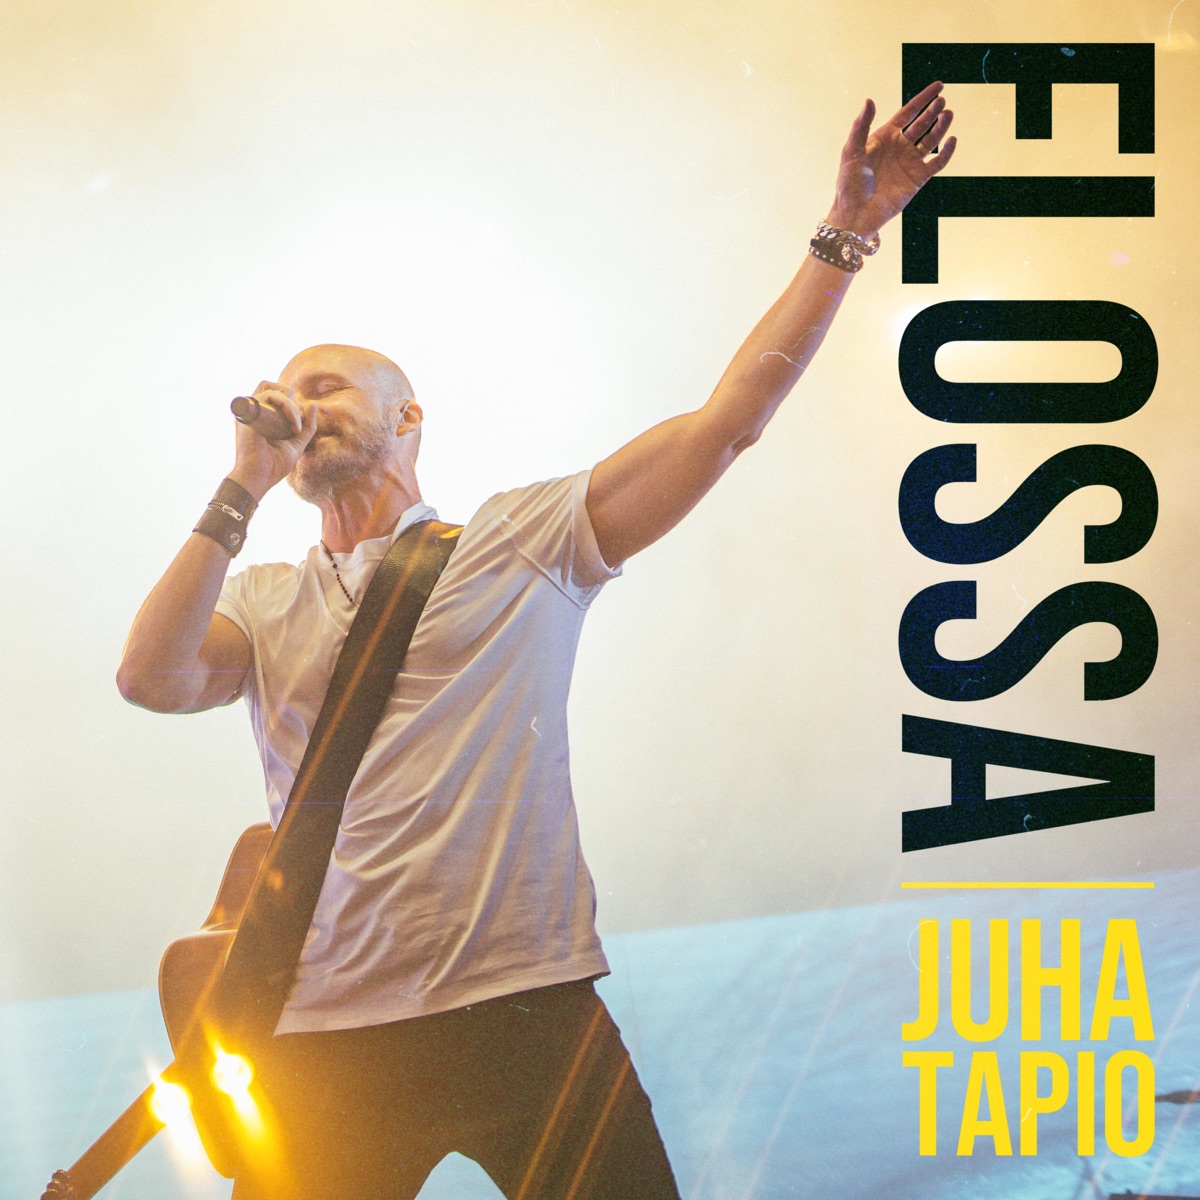 Rakastettu (Radio Edit) - Single av Juha Tapio på Apple Music